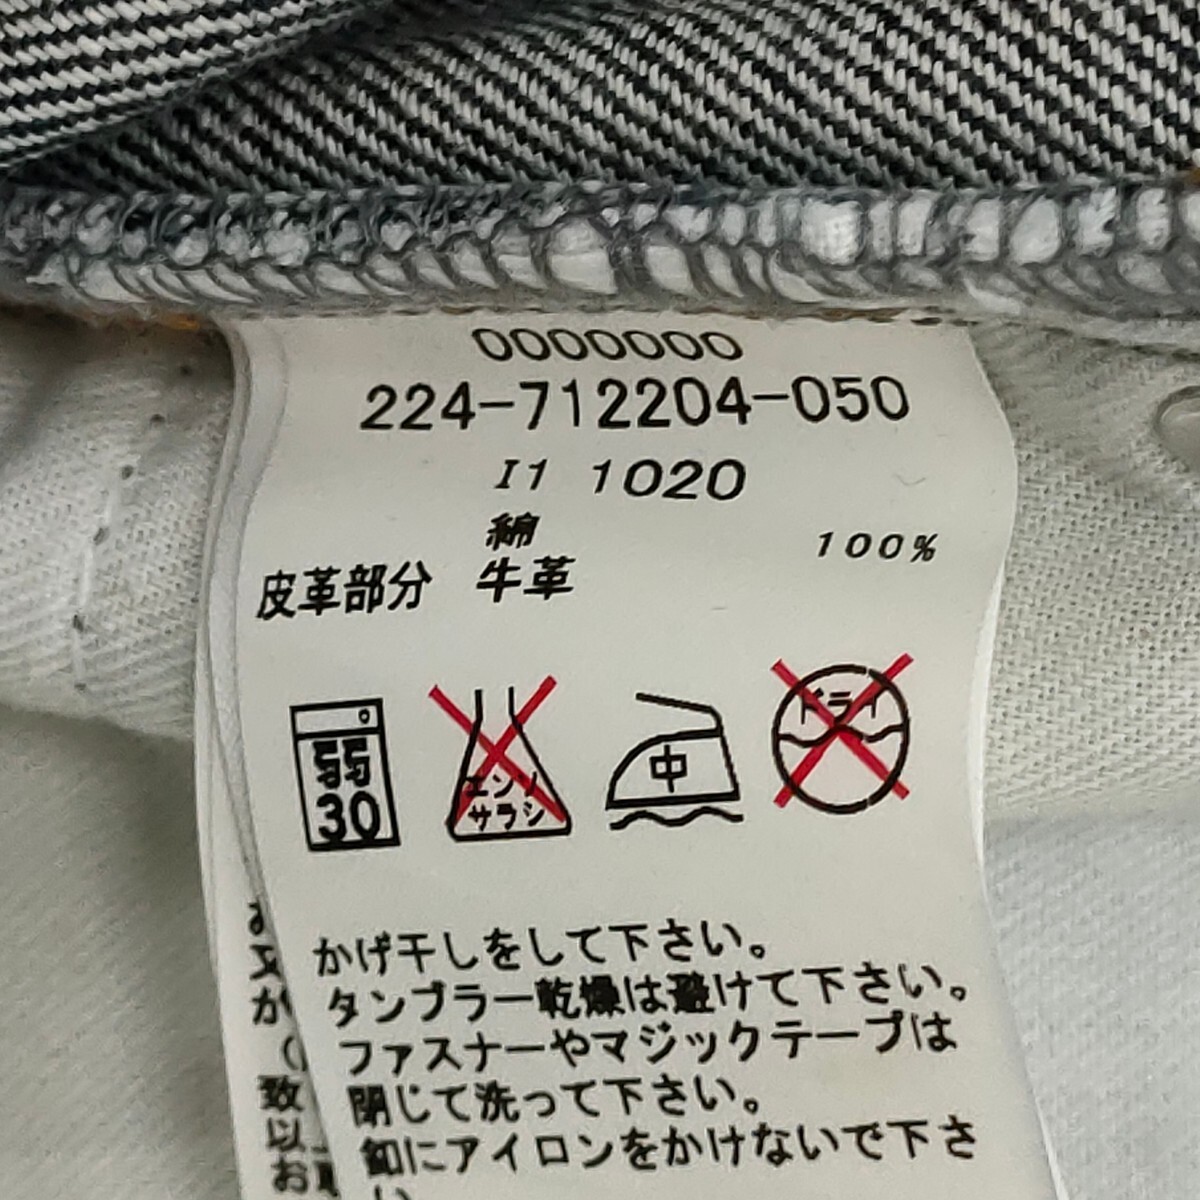 TOMMY GIRL / Tommy Hilfiger женский Denim шорты M размер индиго сделано в Японии I-3801